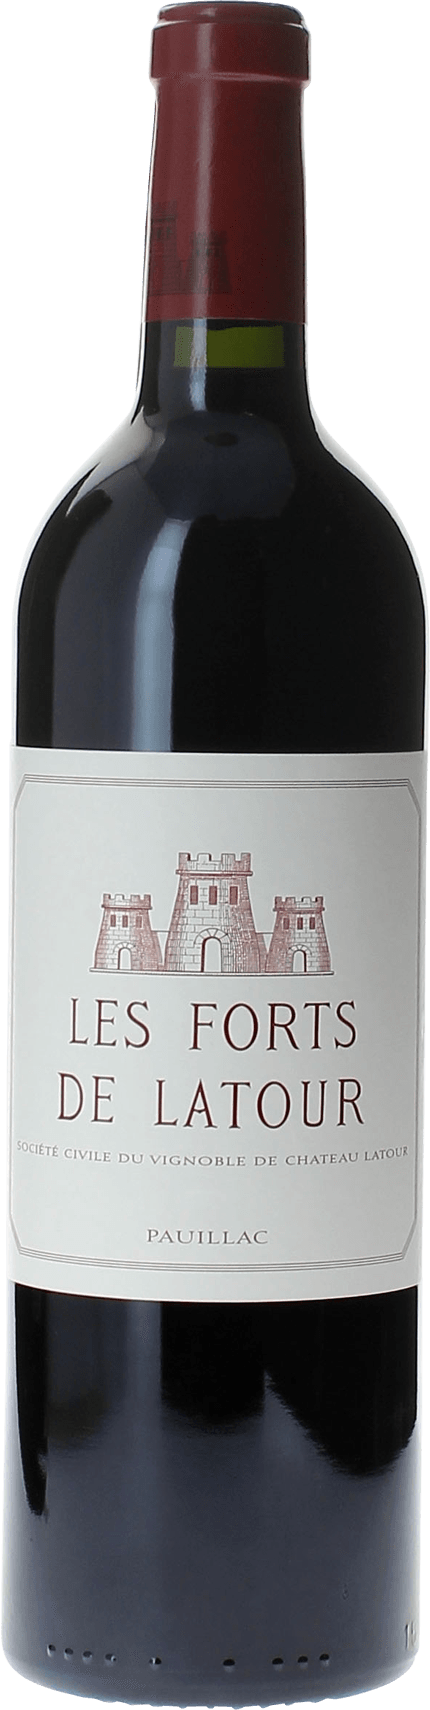 Les forts de latour 1975 2me vin de LATOUR Pauillac, Bordeaux rouge